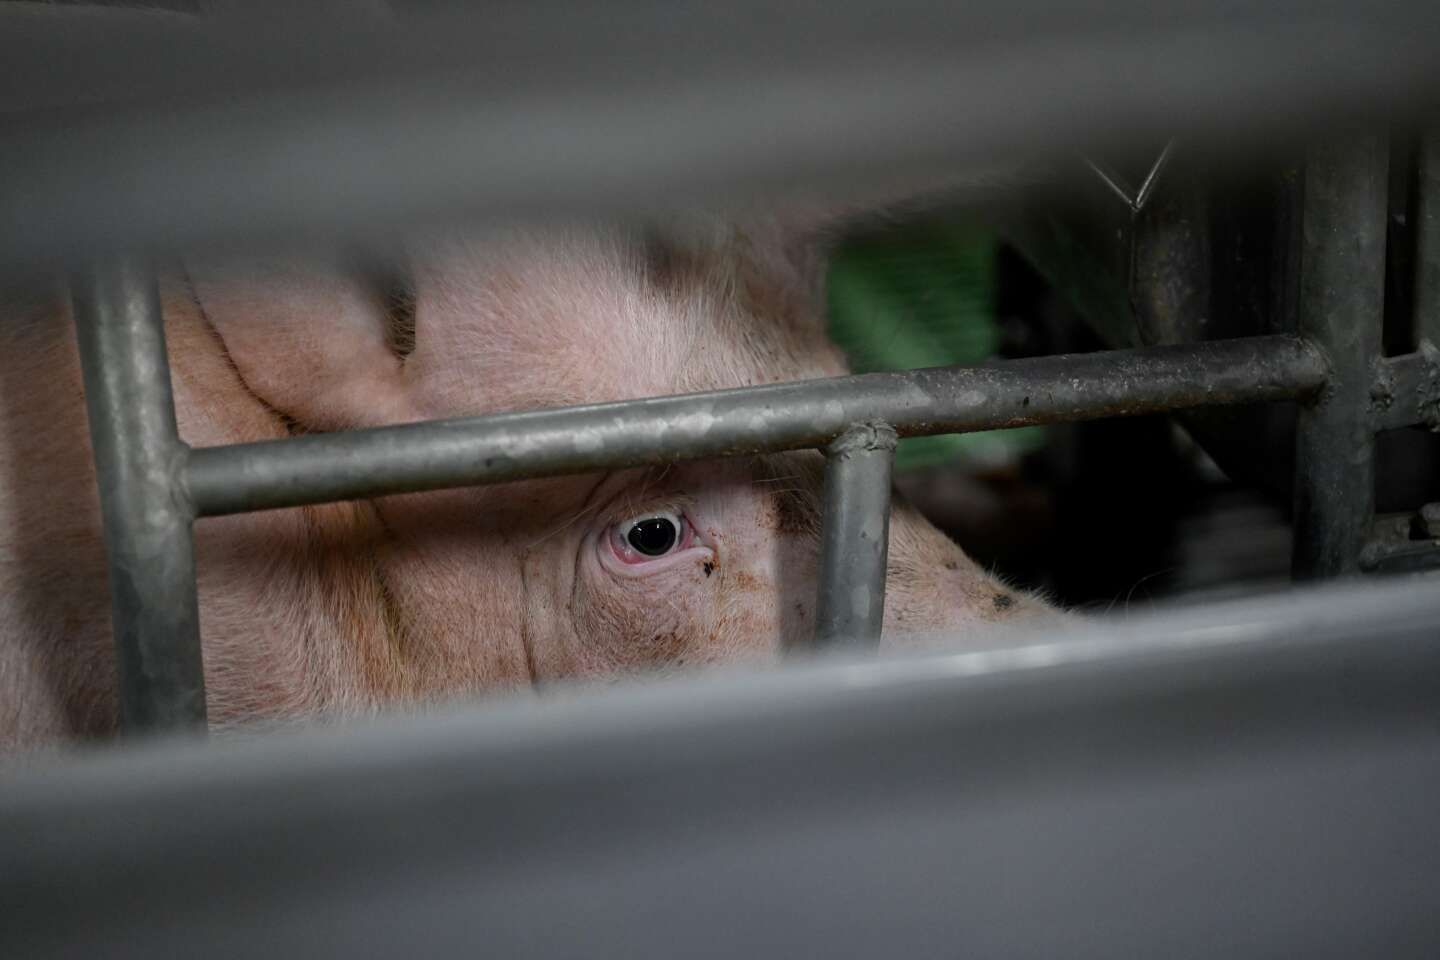 Maltraitance animale : le préfet ordonne une inspection dans un élevage porcin après une plainte de L214